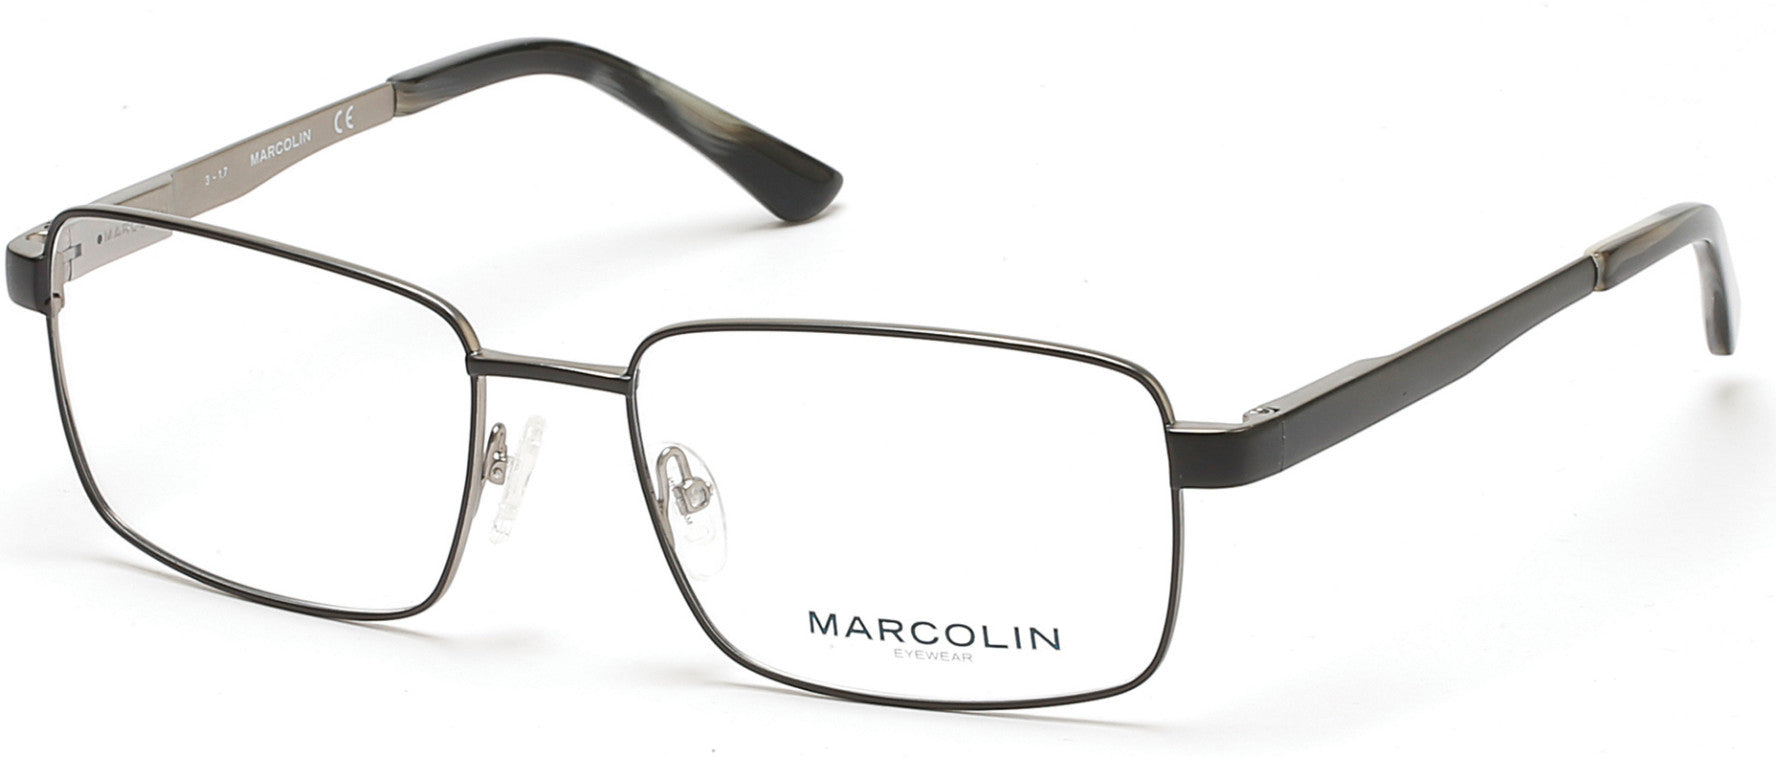 Marcolin MA3004 Eyeglasses 049-002 - Matte Black